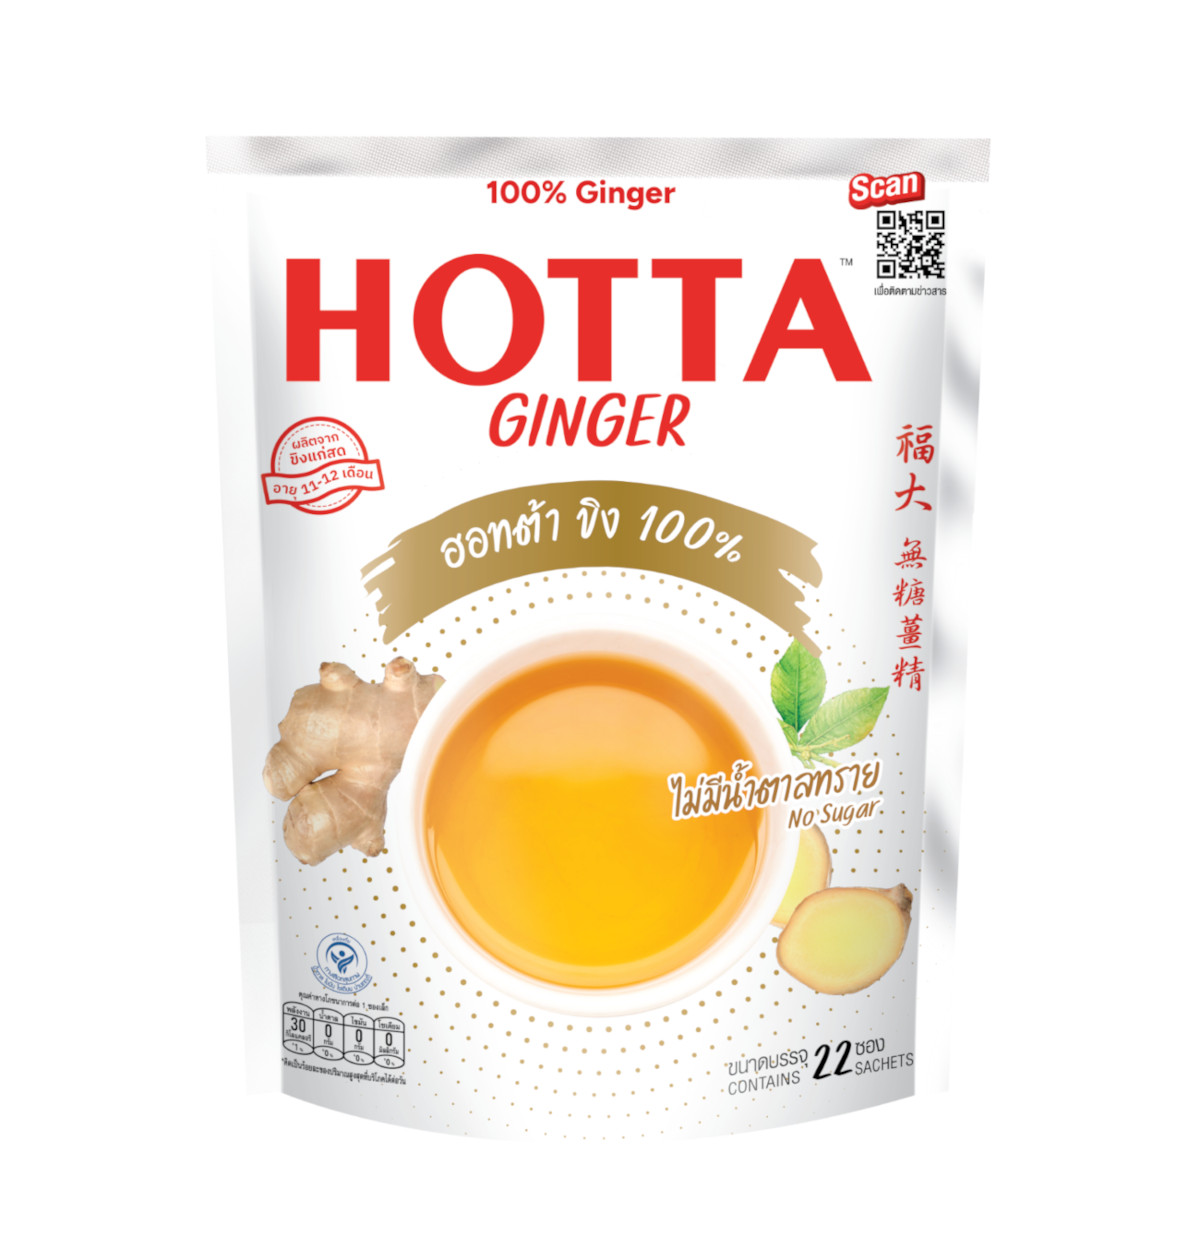 HOTTA 100% Ginger Instant Ginger 7g.x22 Sachets